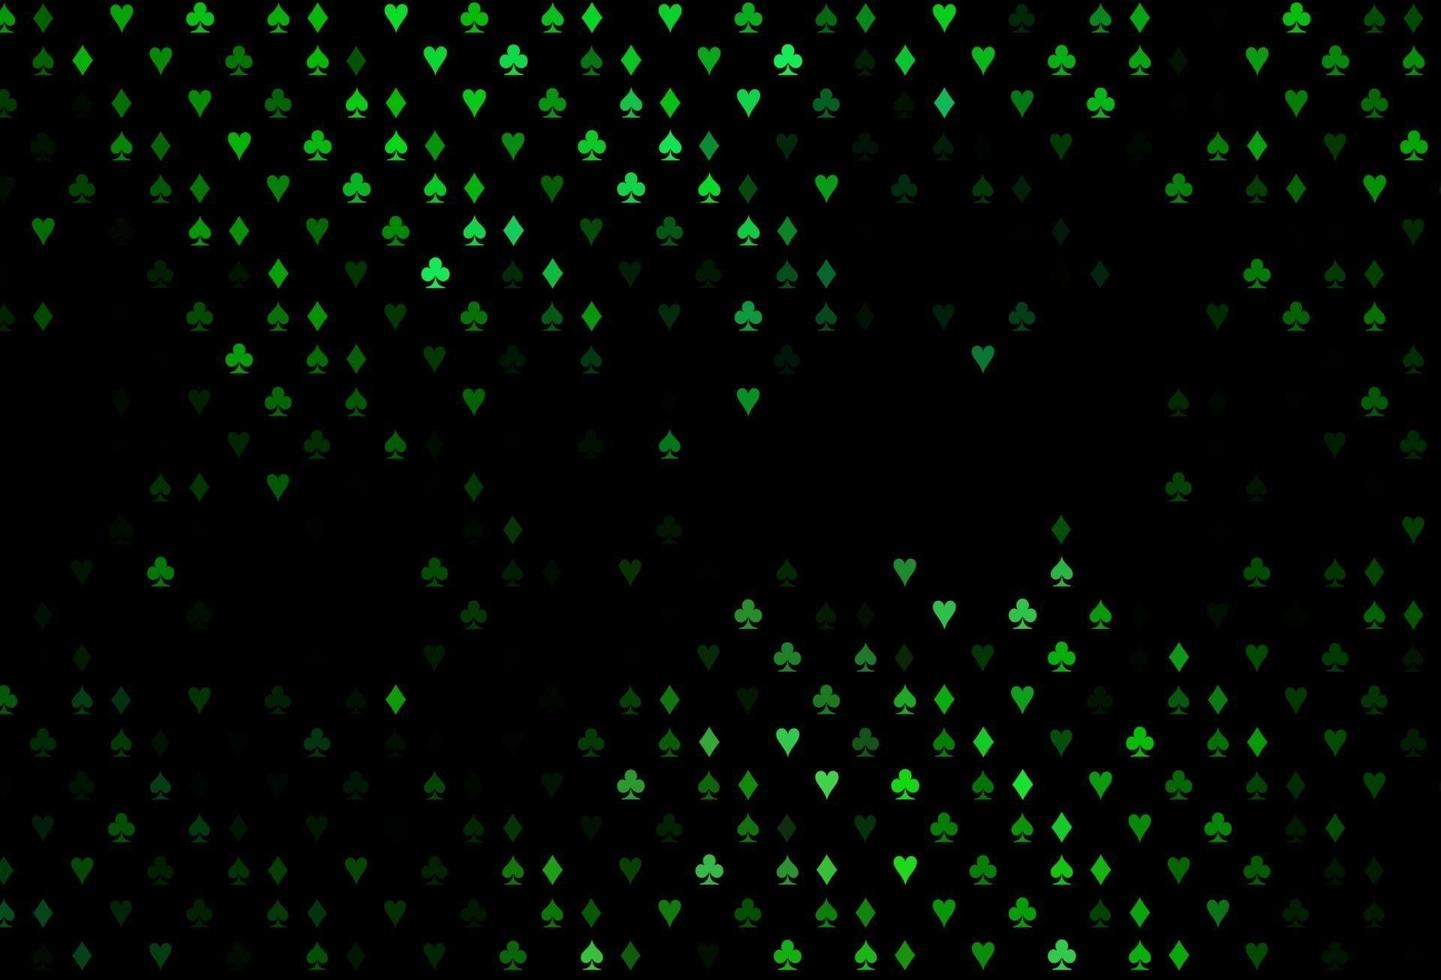 modelo de vetor verde escuro com símbolos de pôquer.